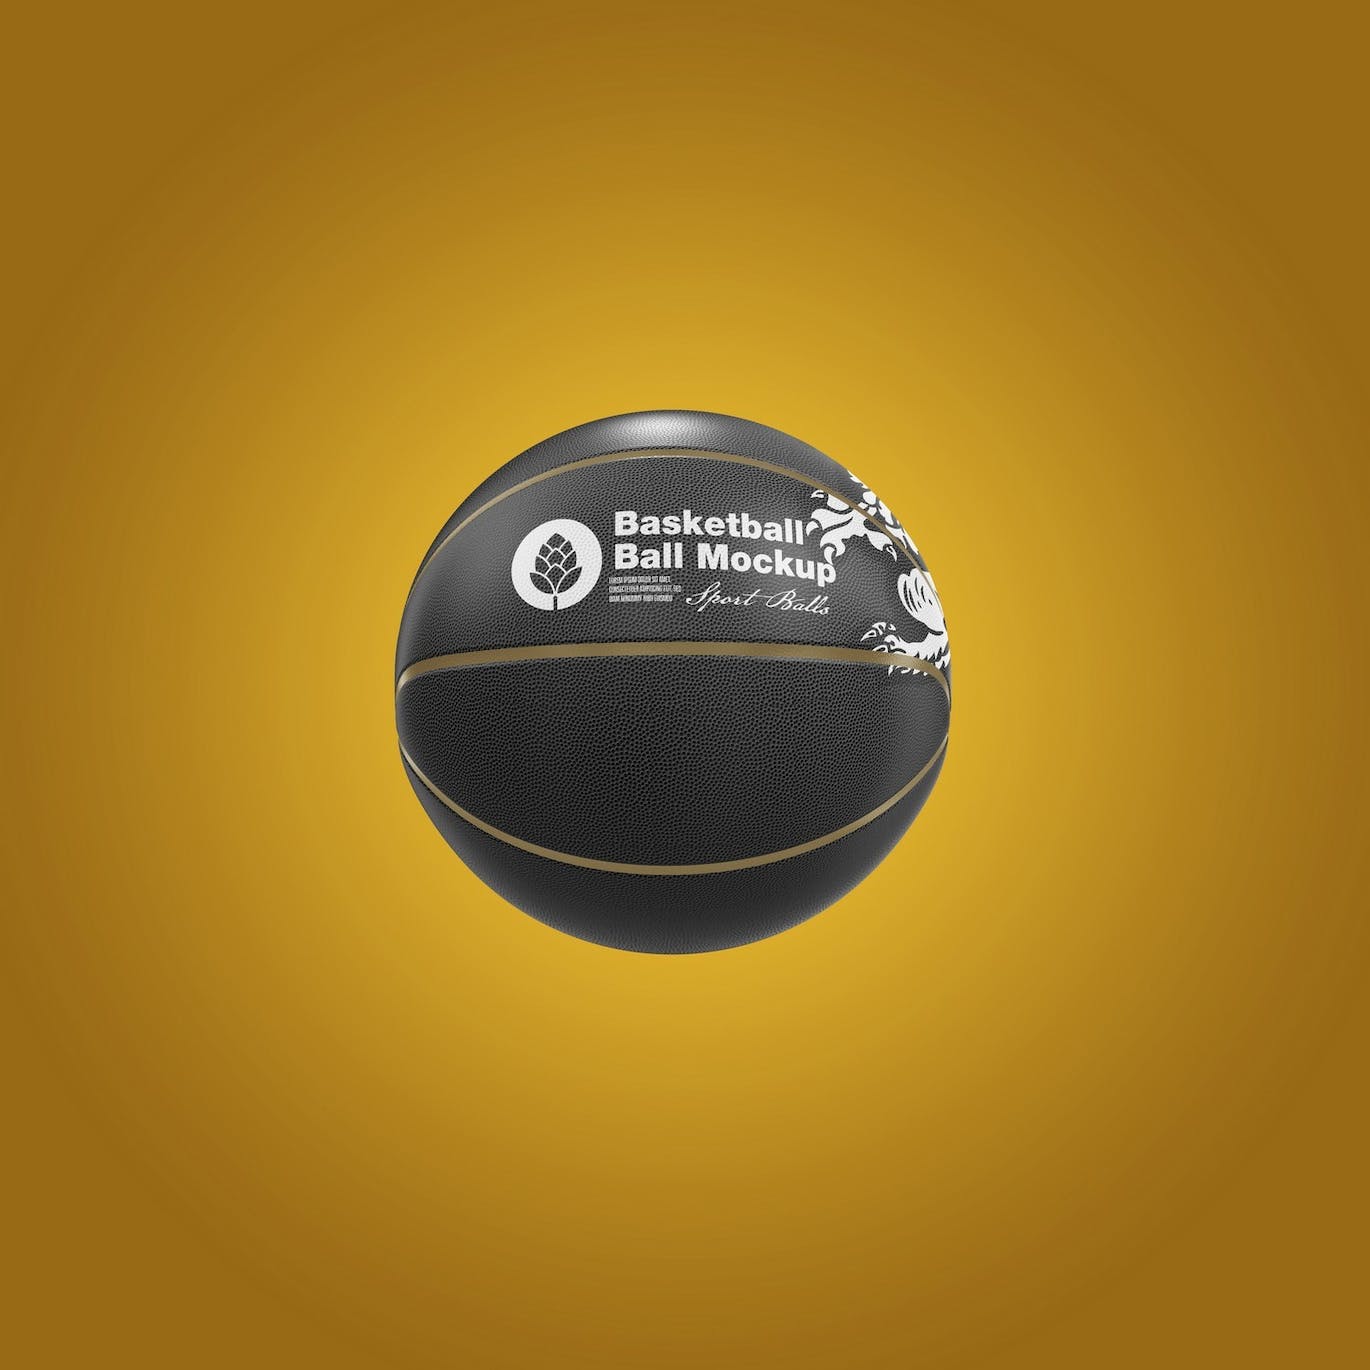 篮球运动品牌设计样机 Basketball Ball Mockup 样机素材 第5张